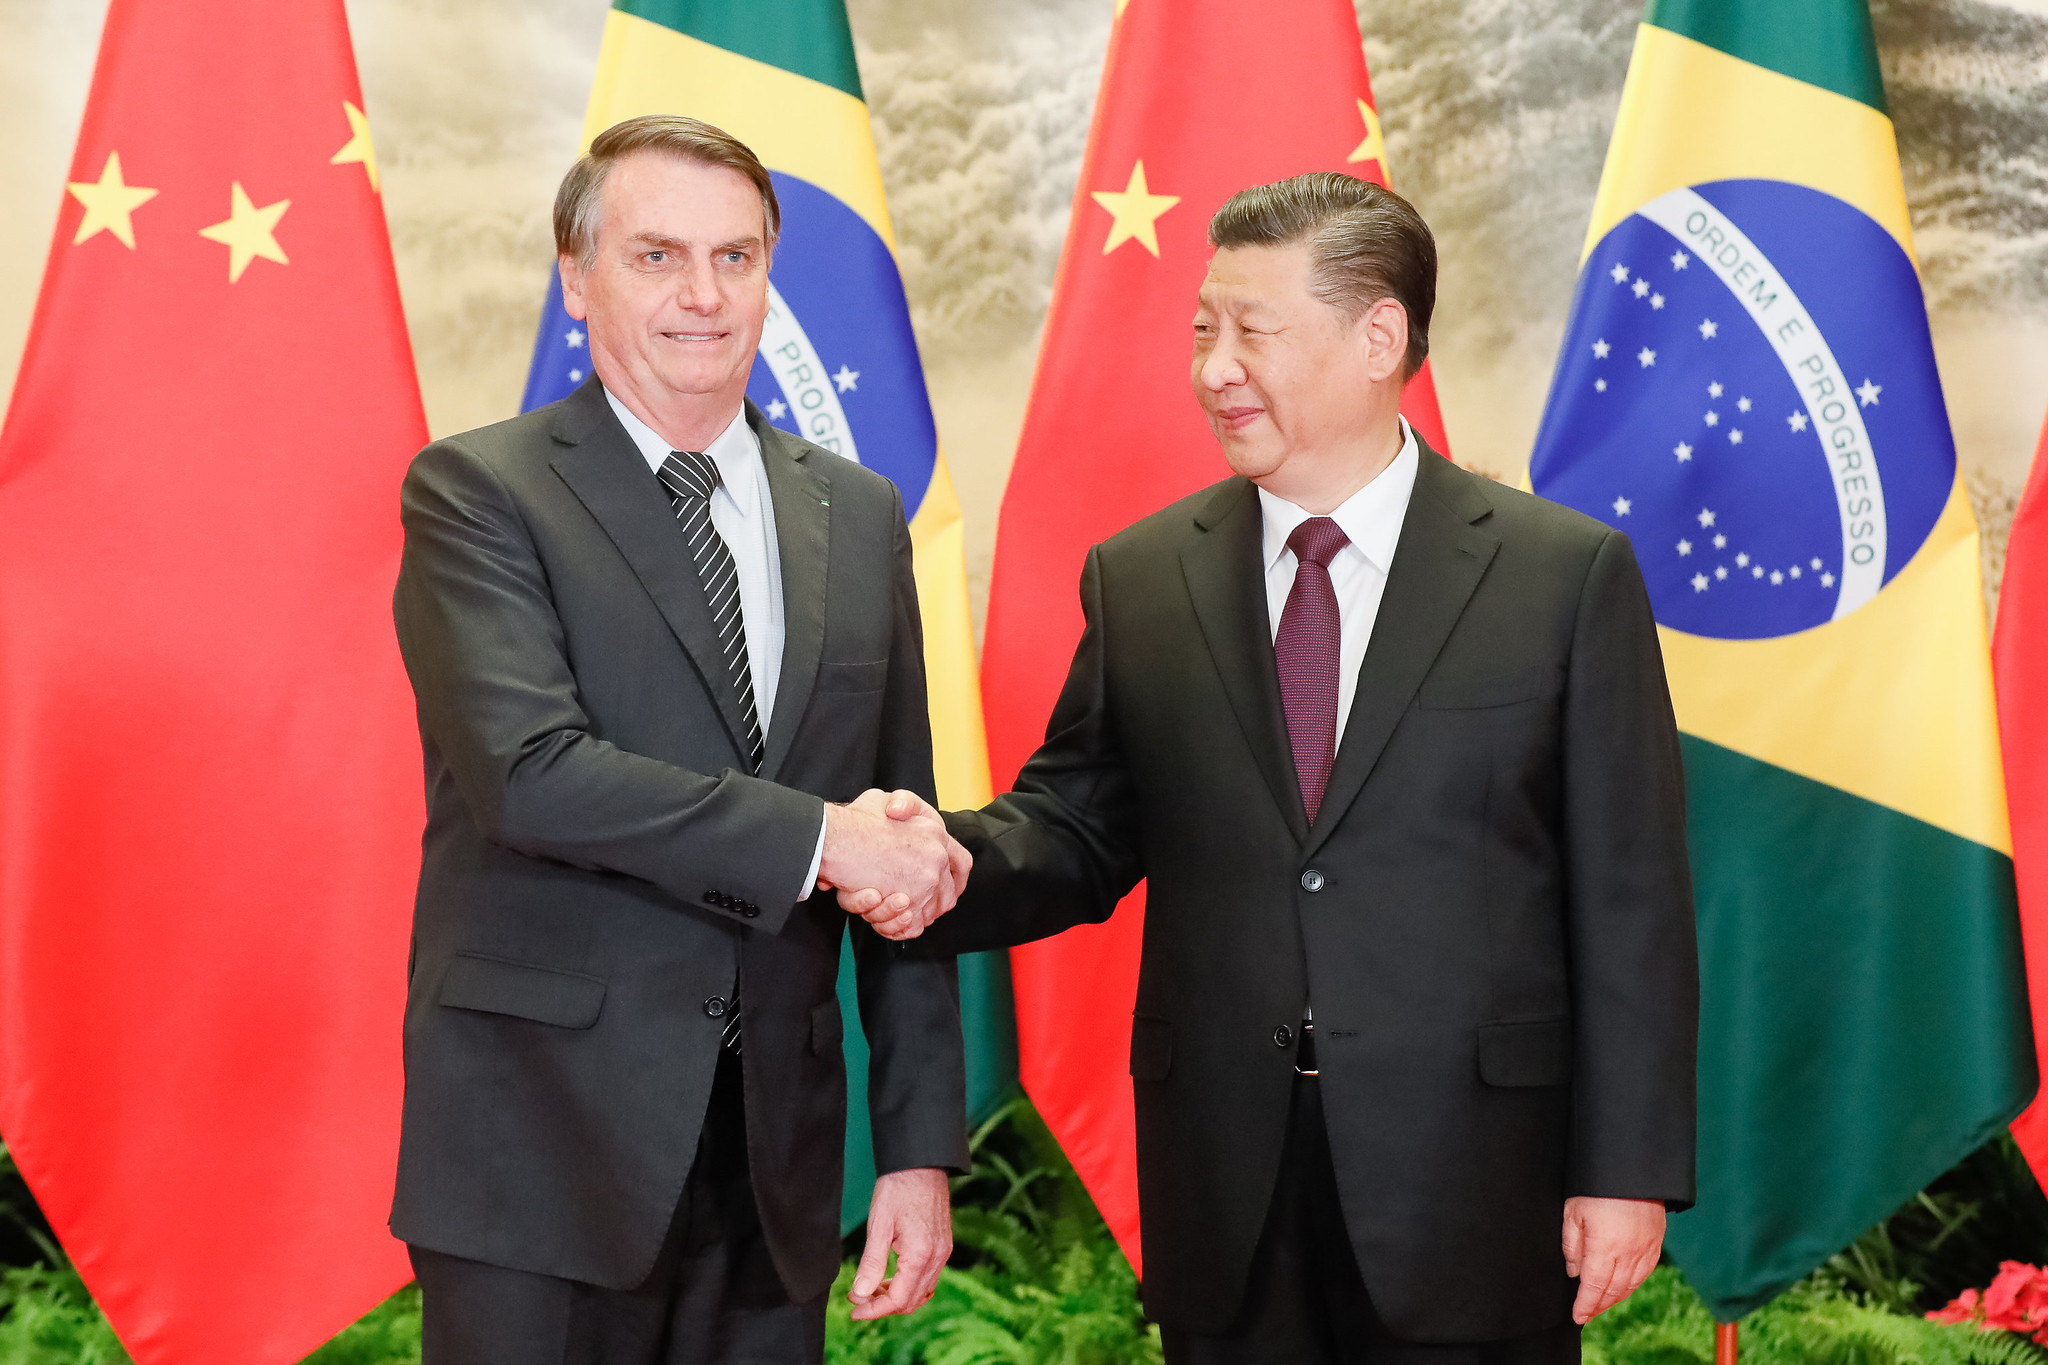 Jair Bolsonaro brazil elnök és Hszi Csin-ping, Kína elnöke találkozik még 2019 novemberében. Bolsonaro az utóbbi időben visszavett Kína-ellenes kommunikációjából.